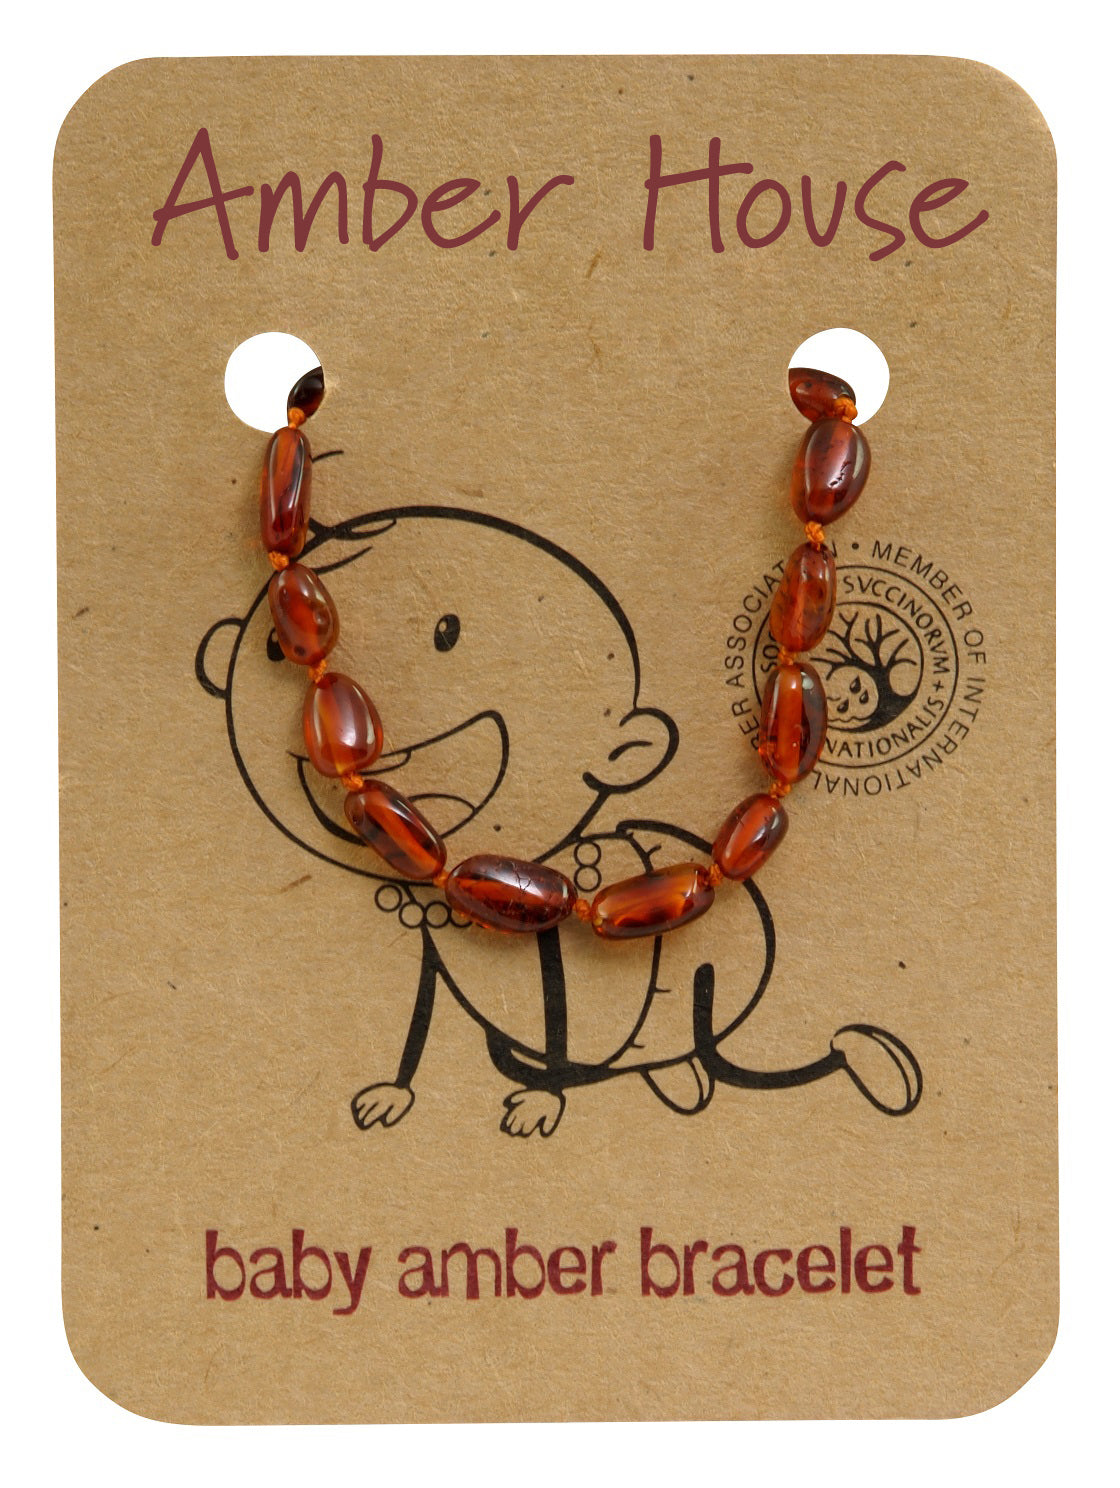 COGNAC OVAL BALTIC AMBER BRACELET / ANKLET - Amber House 